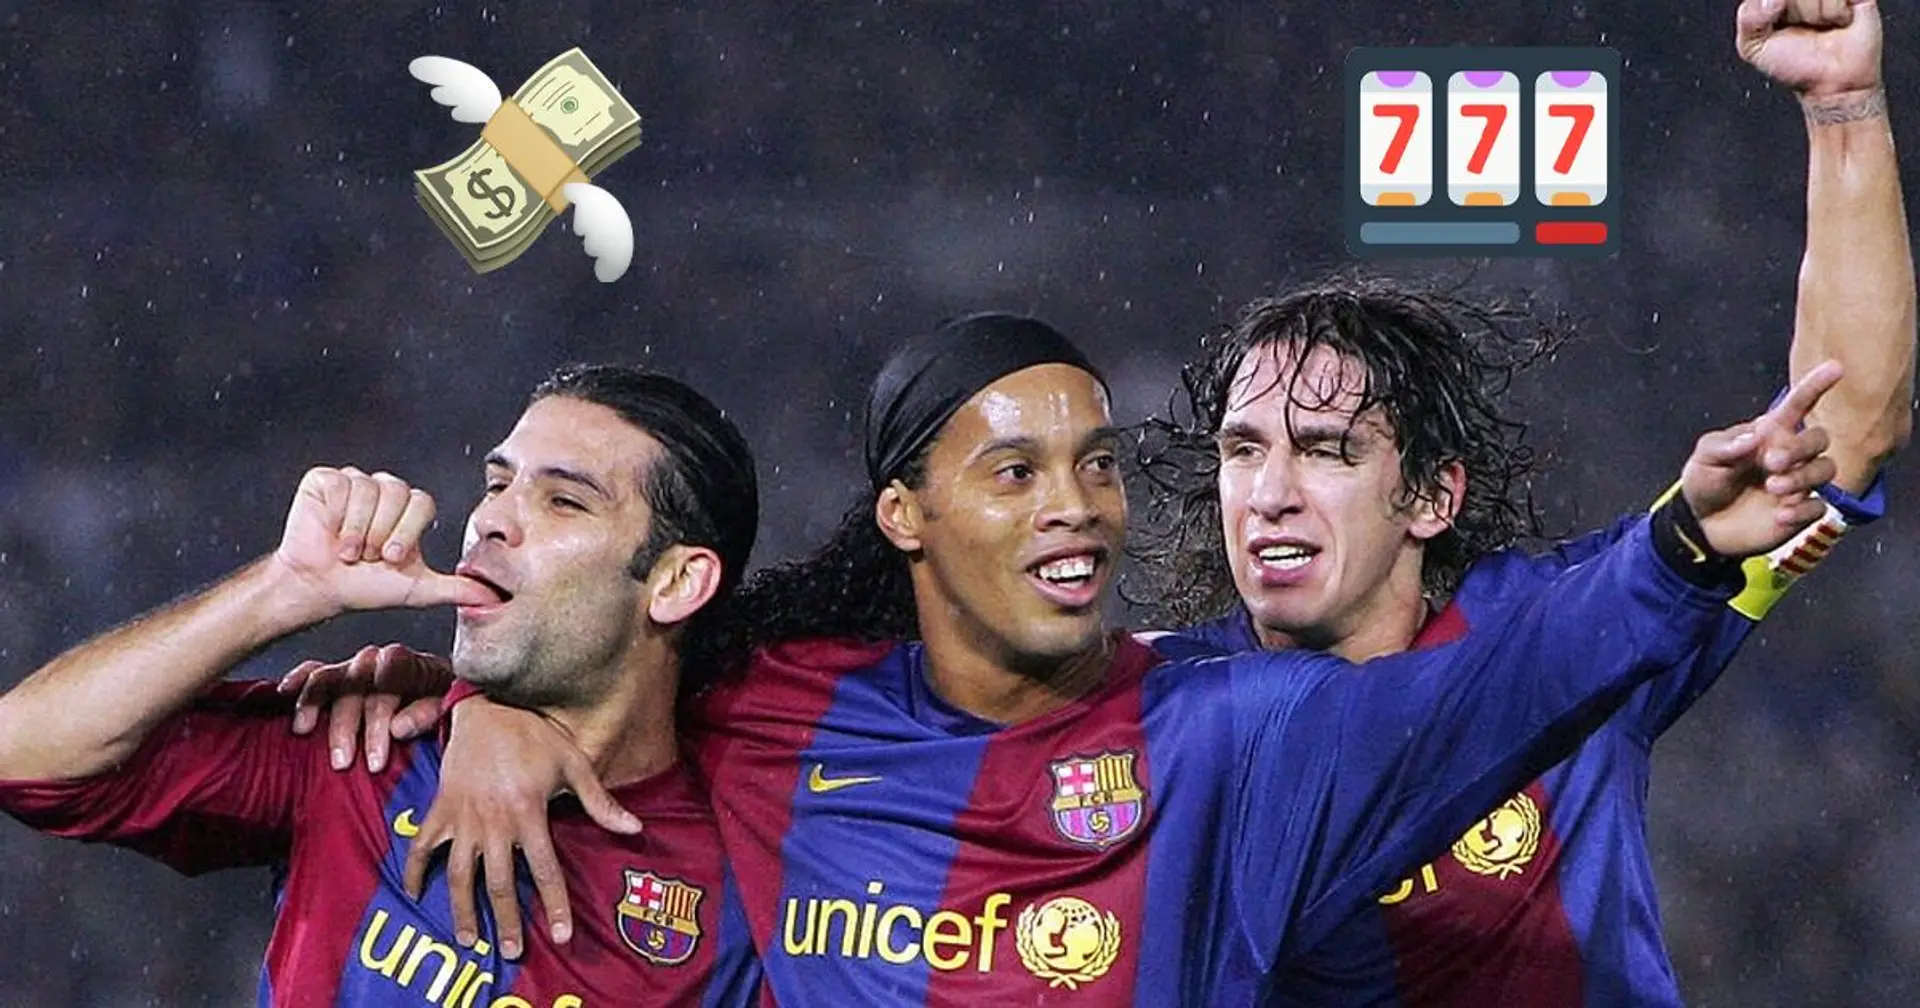 Ronaldinho hat ein Wettbüro eröffnet: Neben Sportwetten werden auch Online-Glücksspiele und Slots angeboten